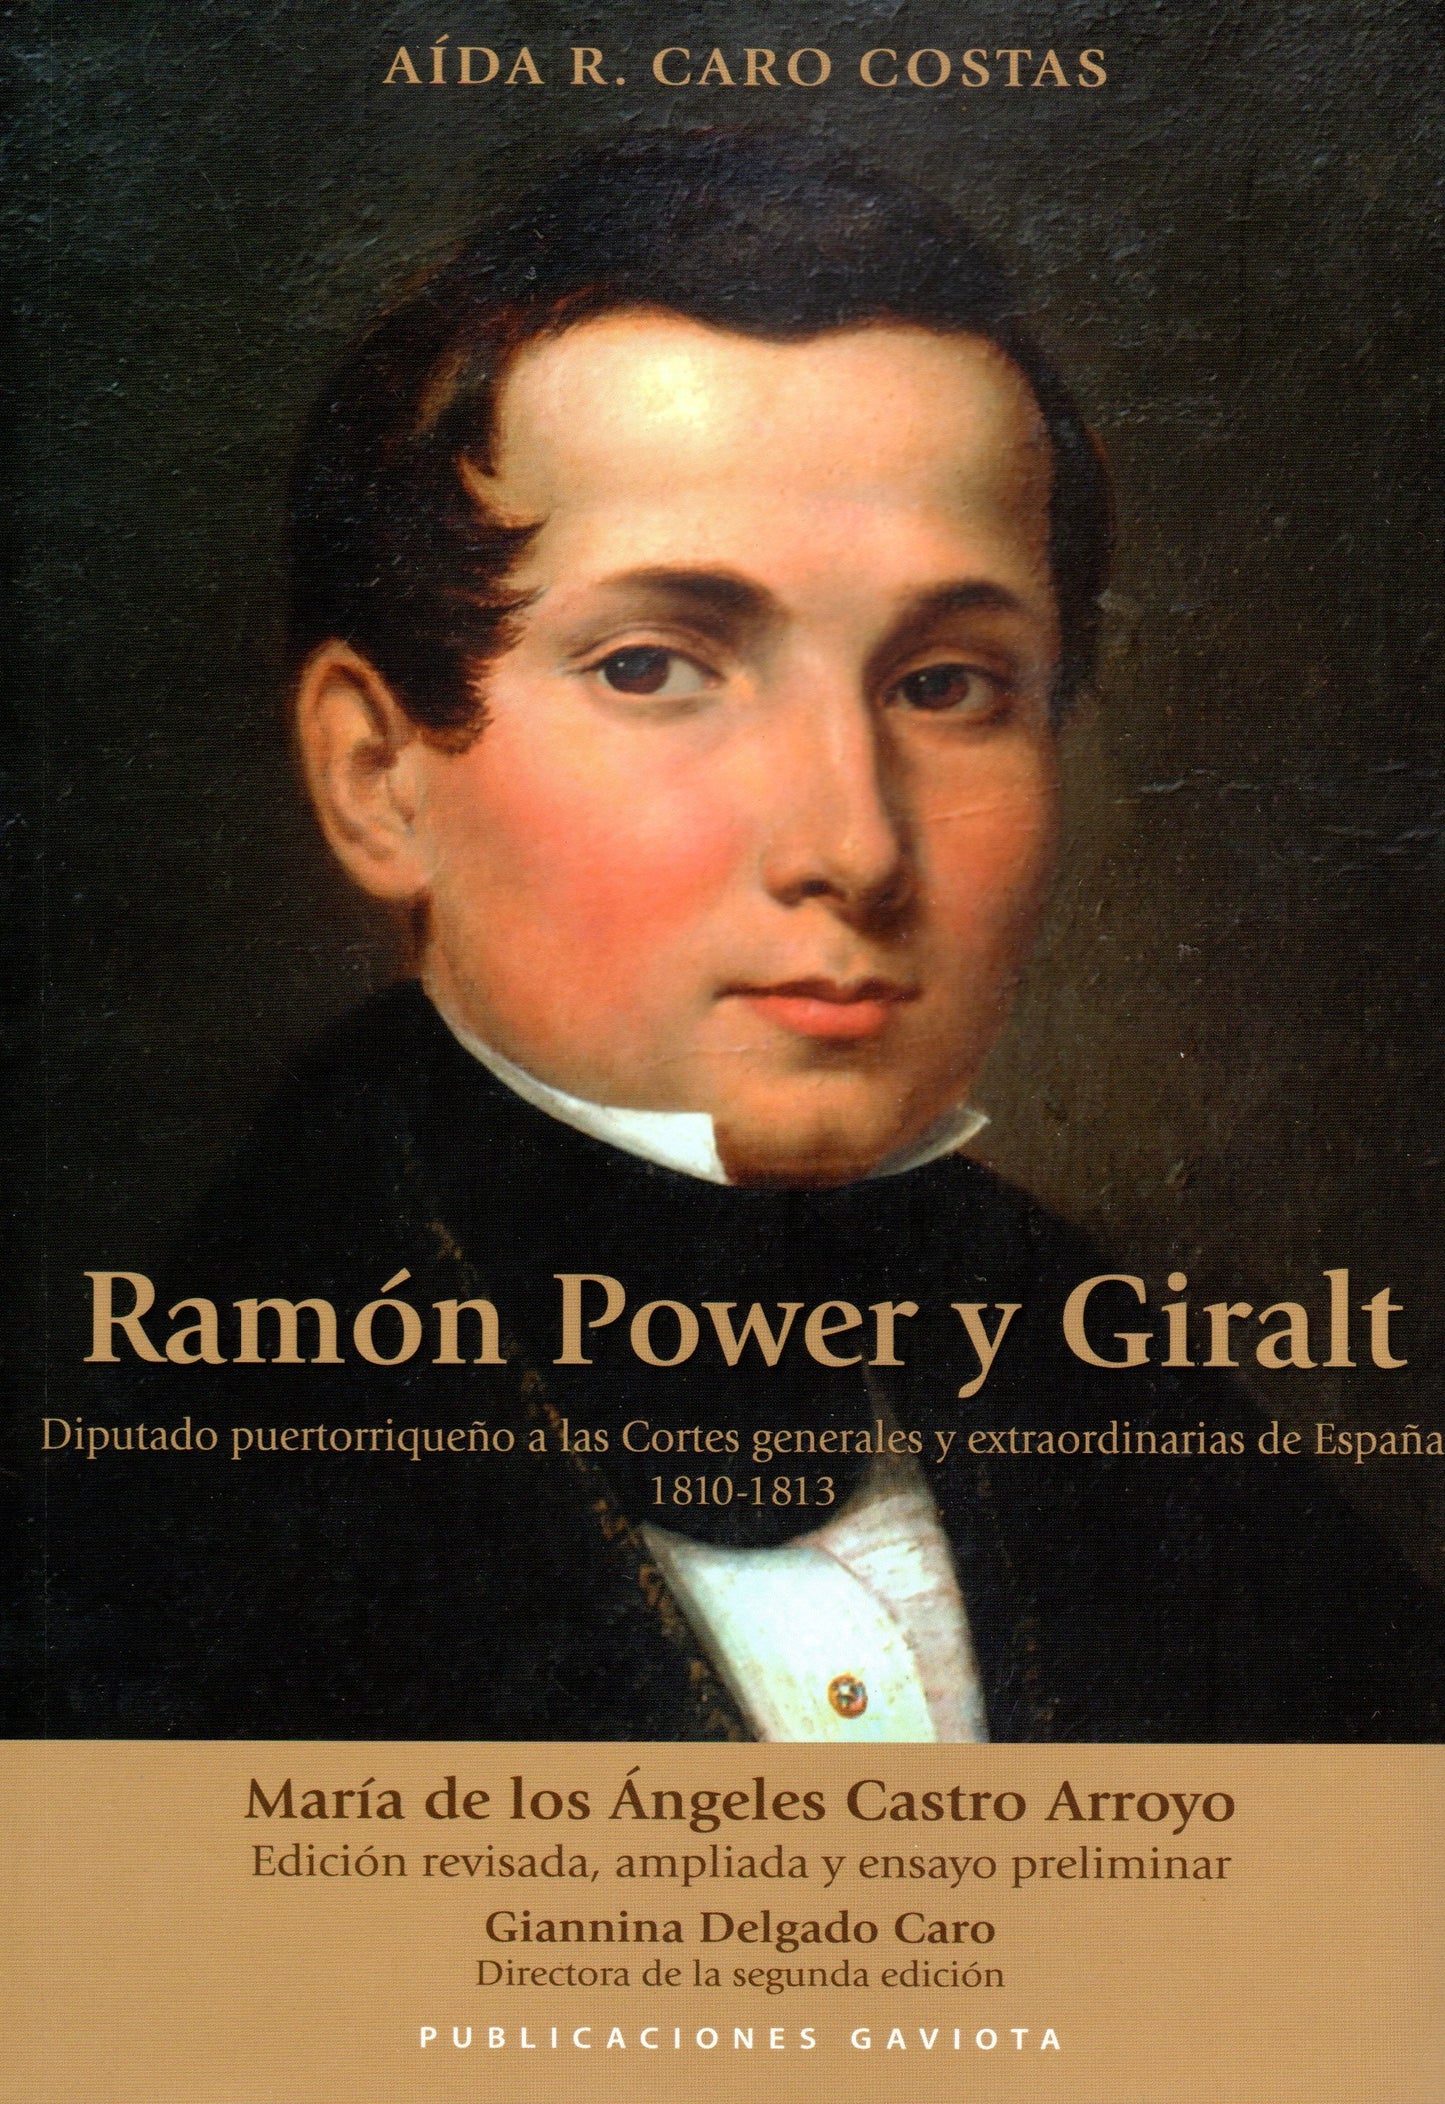 Ramón Power y Giralt: Diputado puertorriqueño a las Cortes generales y extraordinarias de España 1810-1813